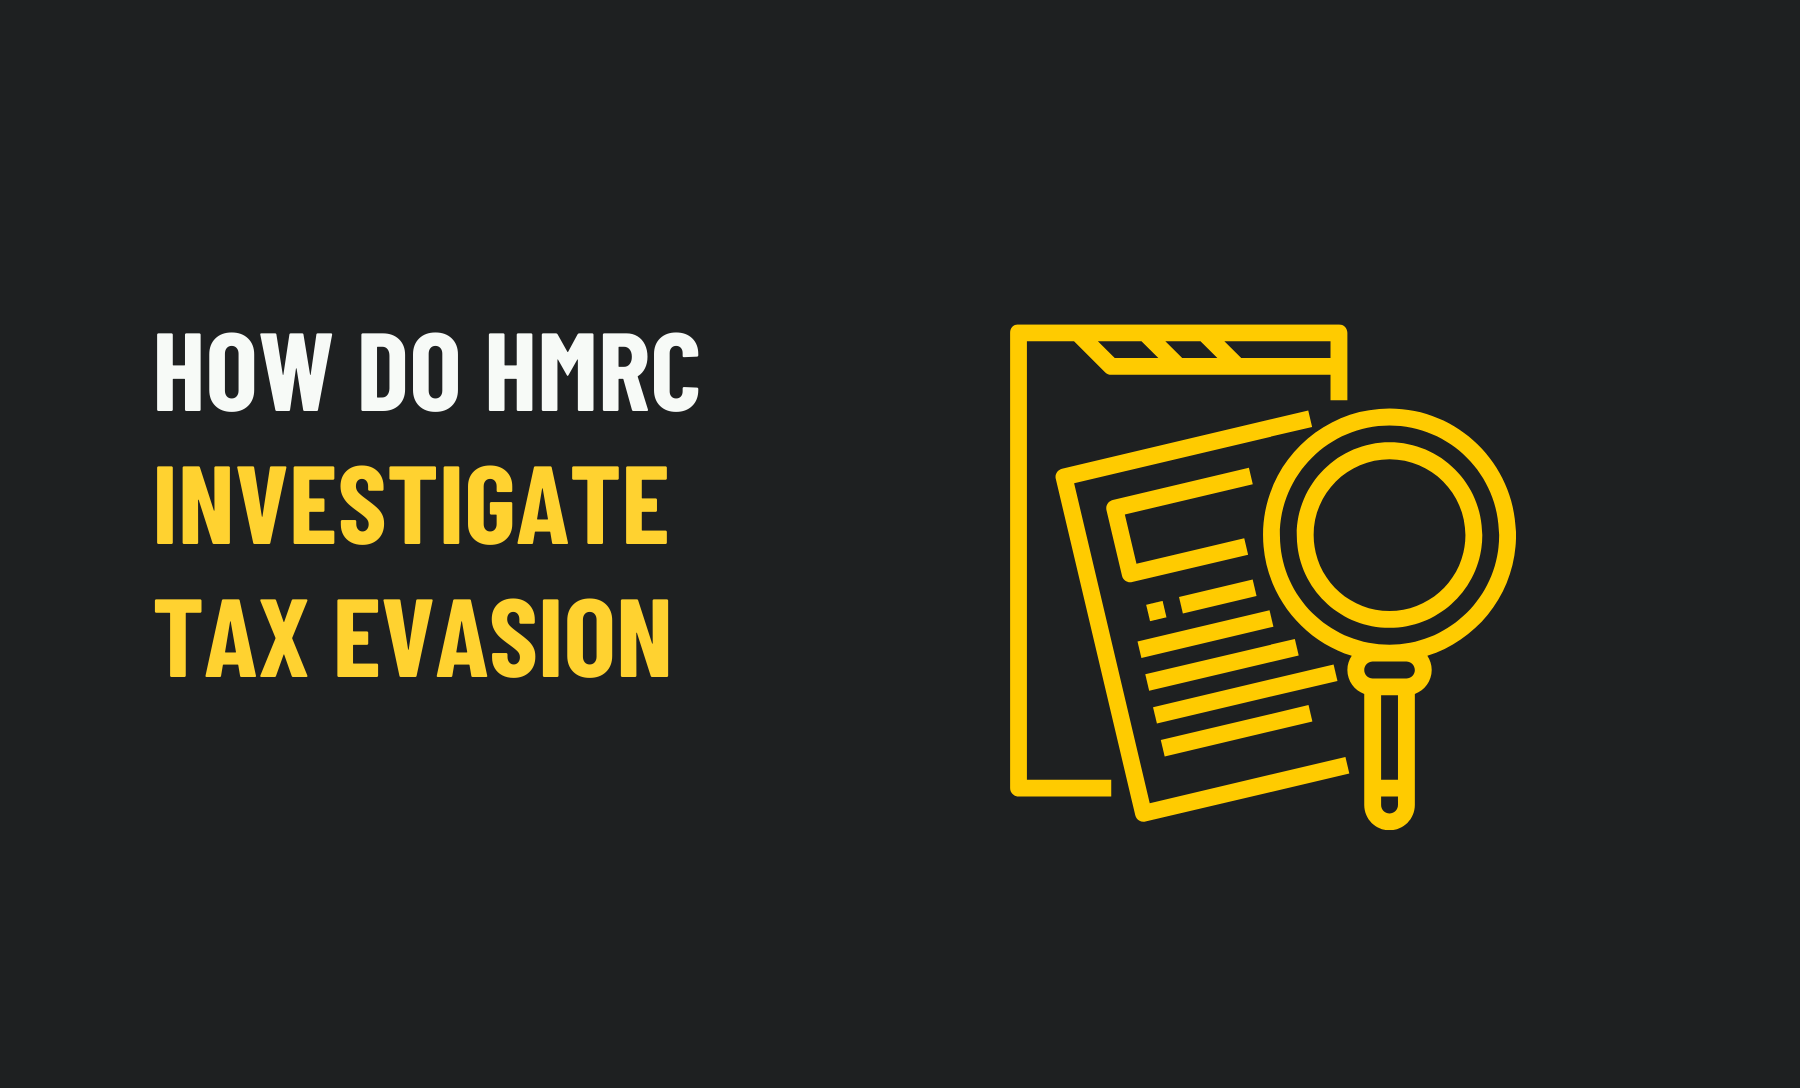 HMRC Investigate Tax Evasion